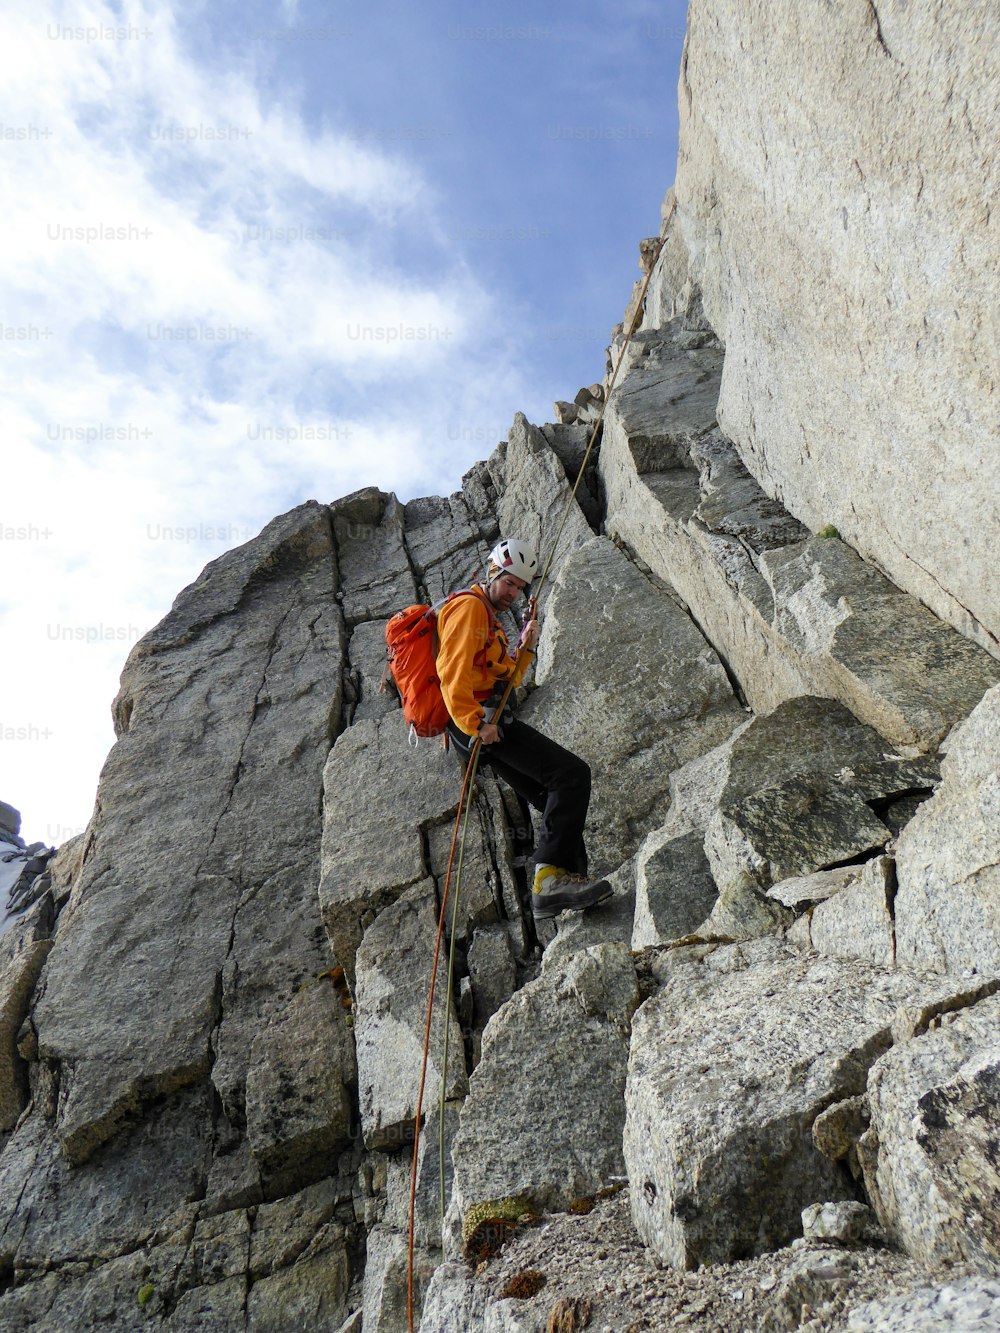 Un alpiniste descend en rappel d’une crête rocheuse escarpée dans les Alpes françaises, près de Chamonix.